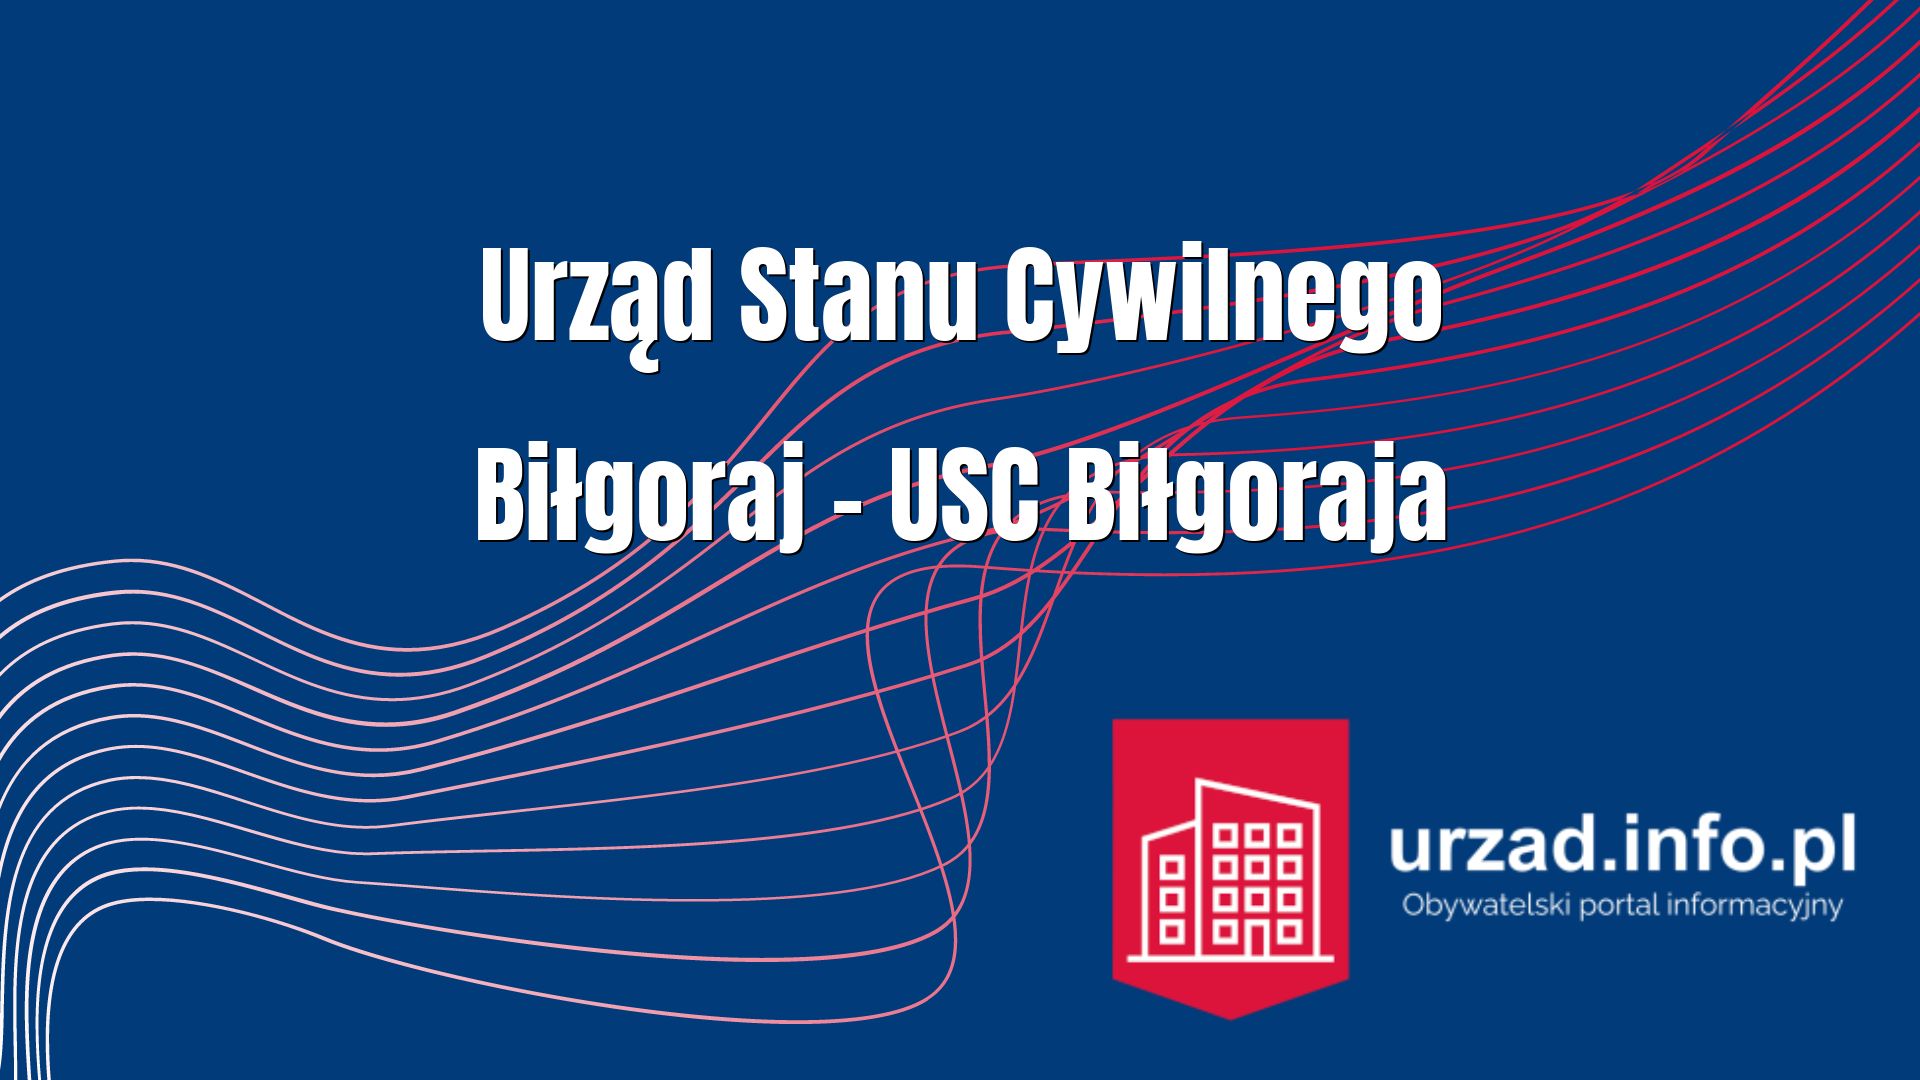 Urząd Stanu Cywilnego Biłgoraj – USC Biłgoraja